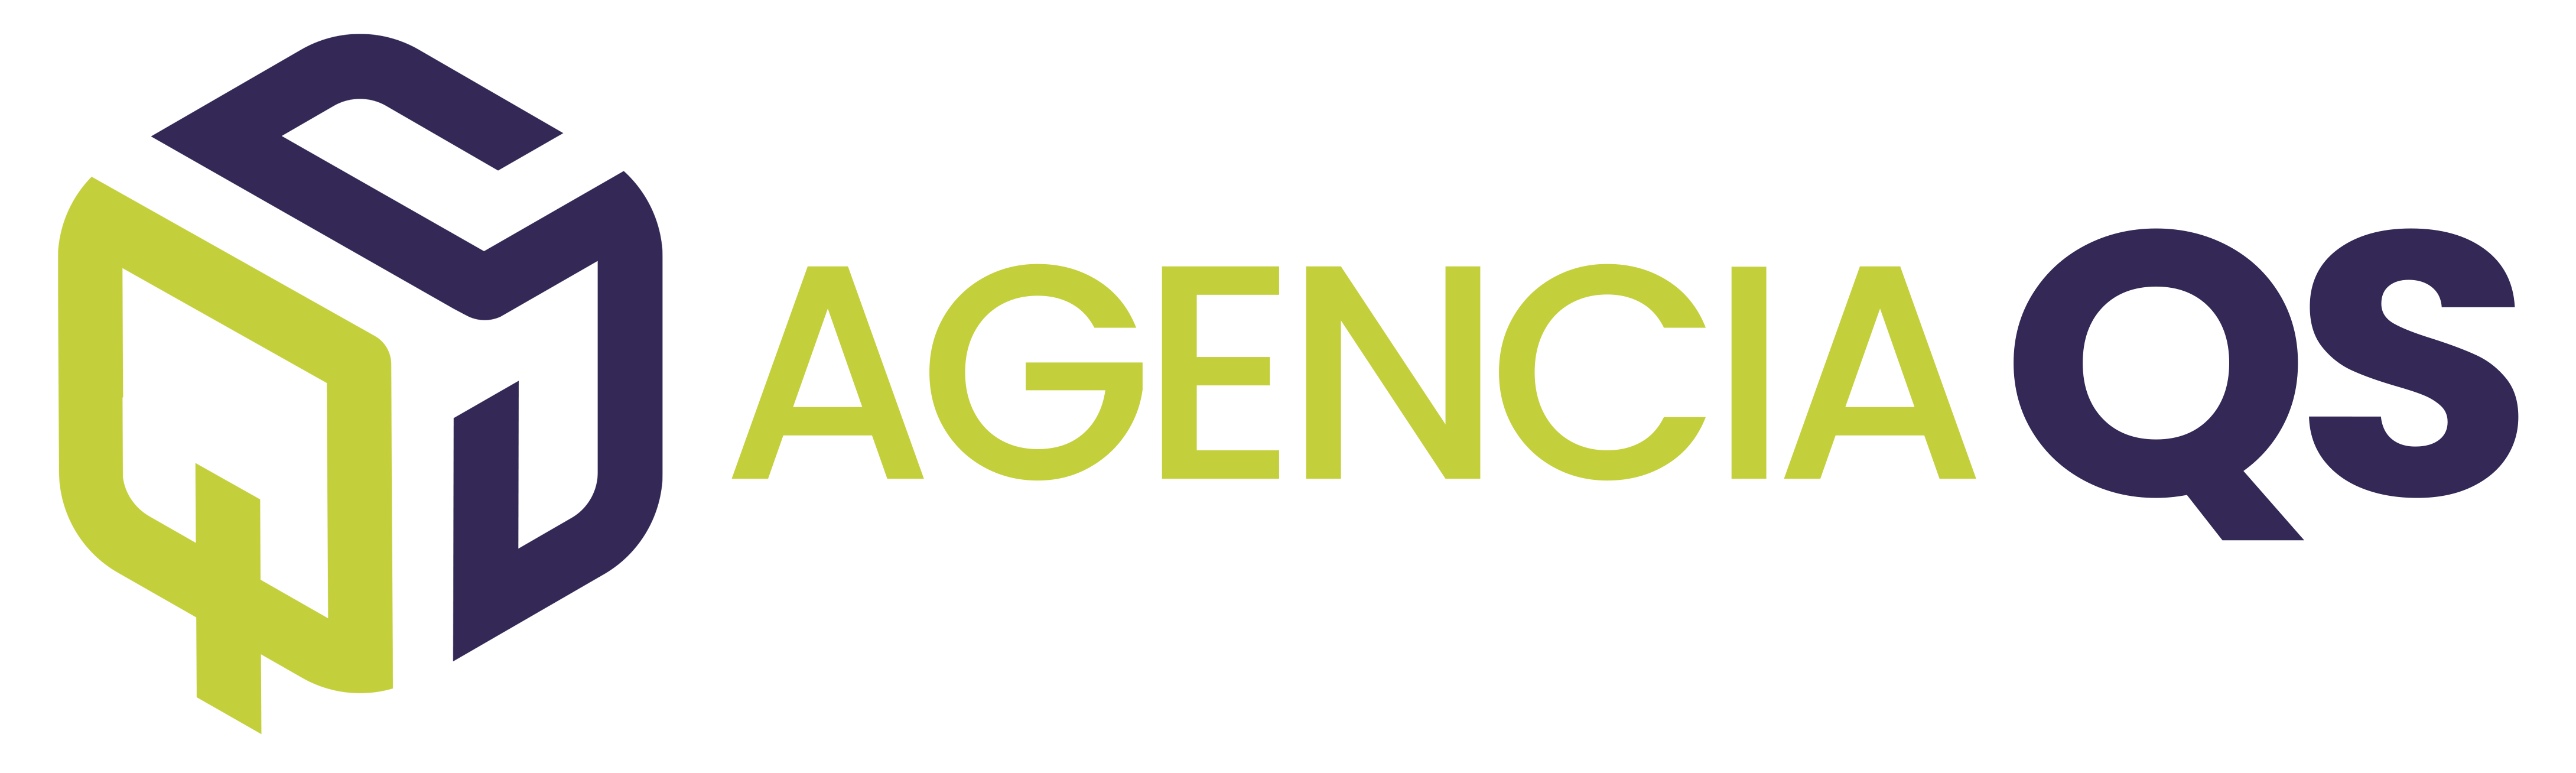 Agencia QS - Marketing Digital y Diseño Web